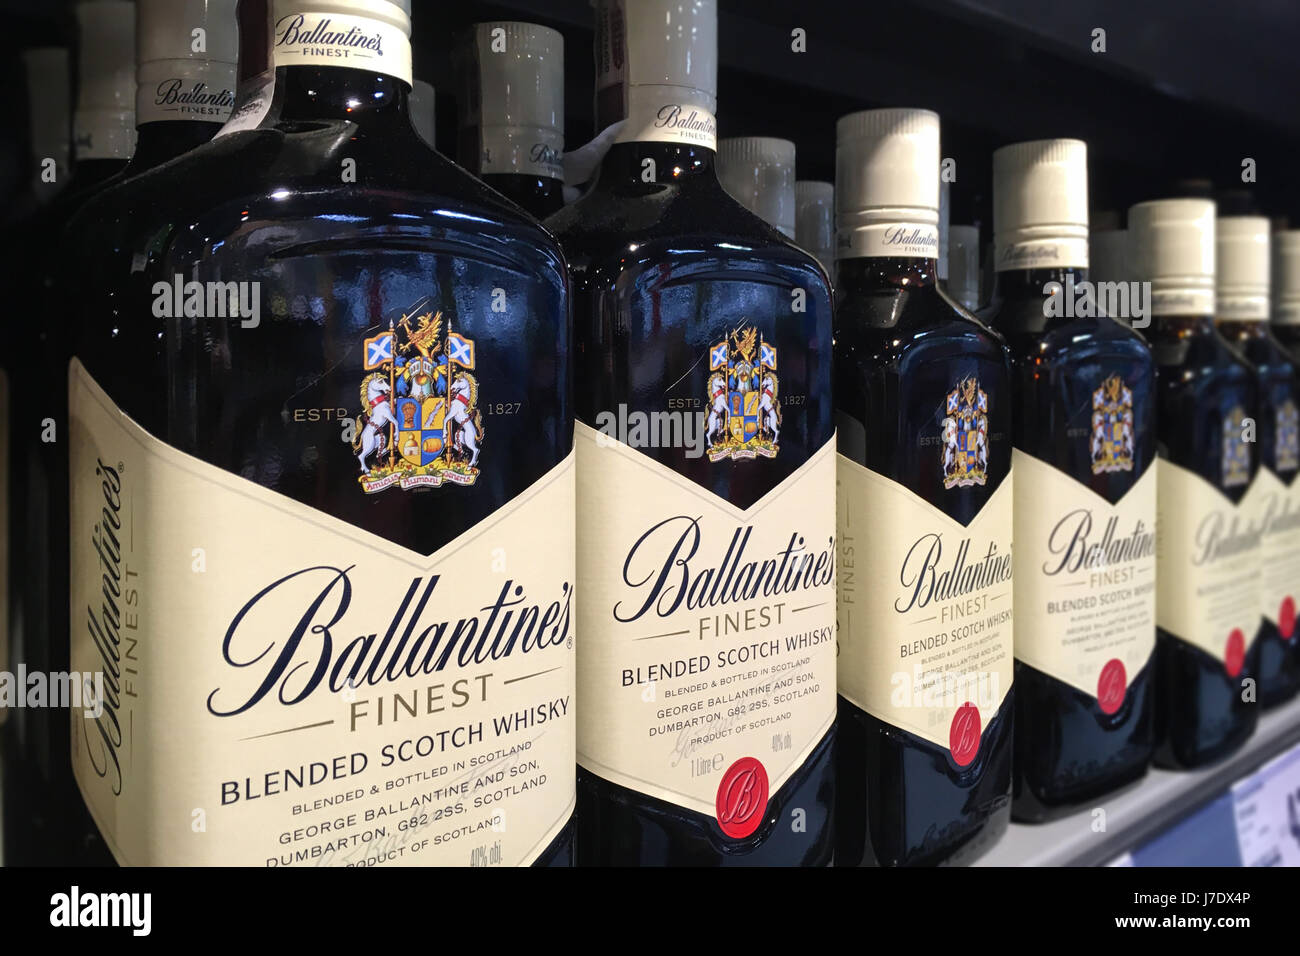 Nowy Sacz, Pologne - 13 mai 2017 : Bouteilles de Ballantine's Finest Blended Scotch whisky sur les tablettes des magasins à vendre à l'hypermarché Kaufland. Banque D'Images